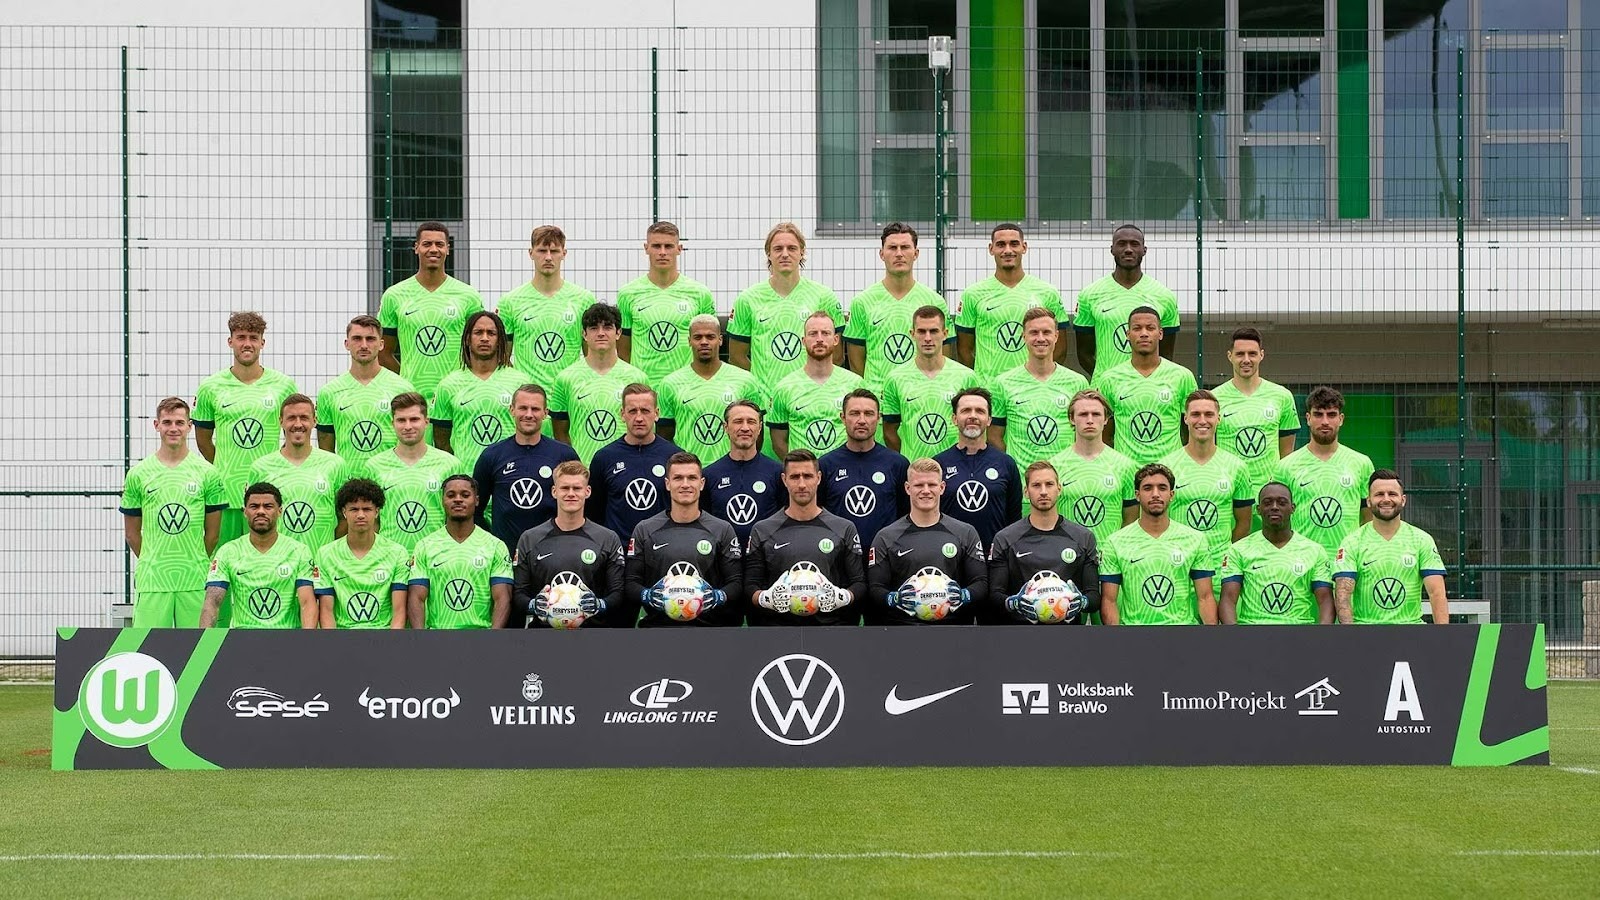 Hình ảnh tổng hợp về danh sách đội hình các cầu thủ Wolfsburg